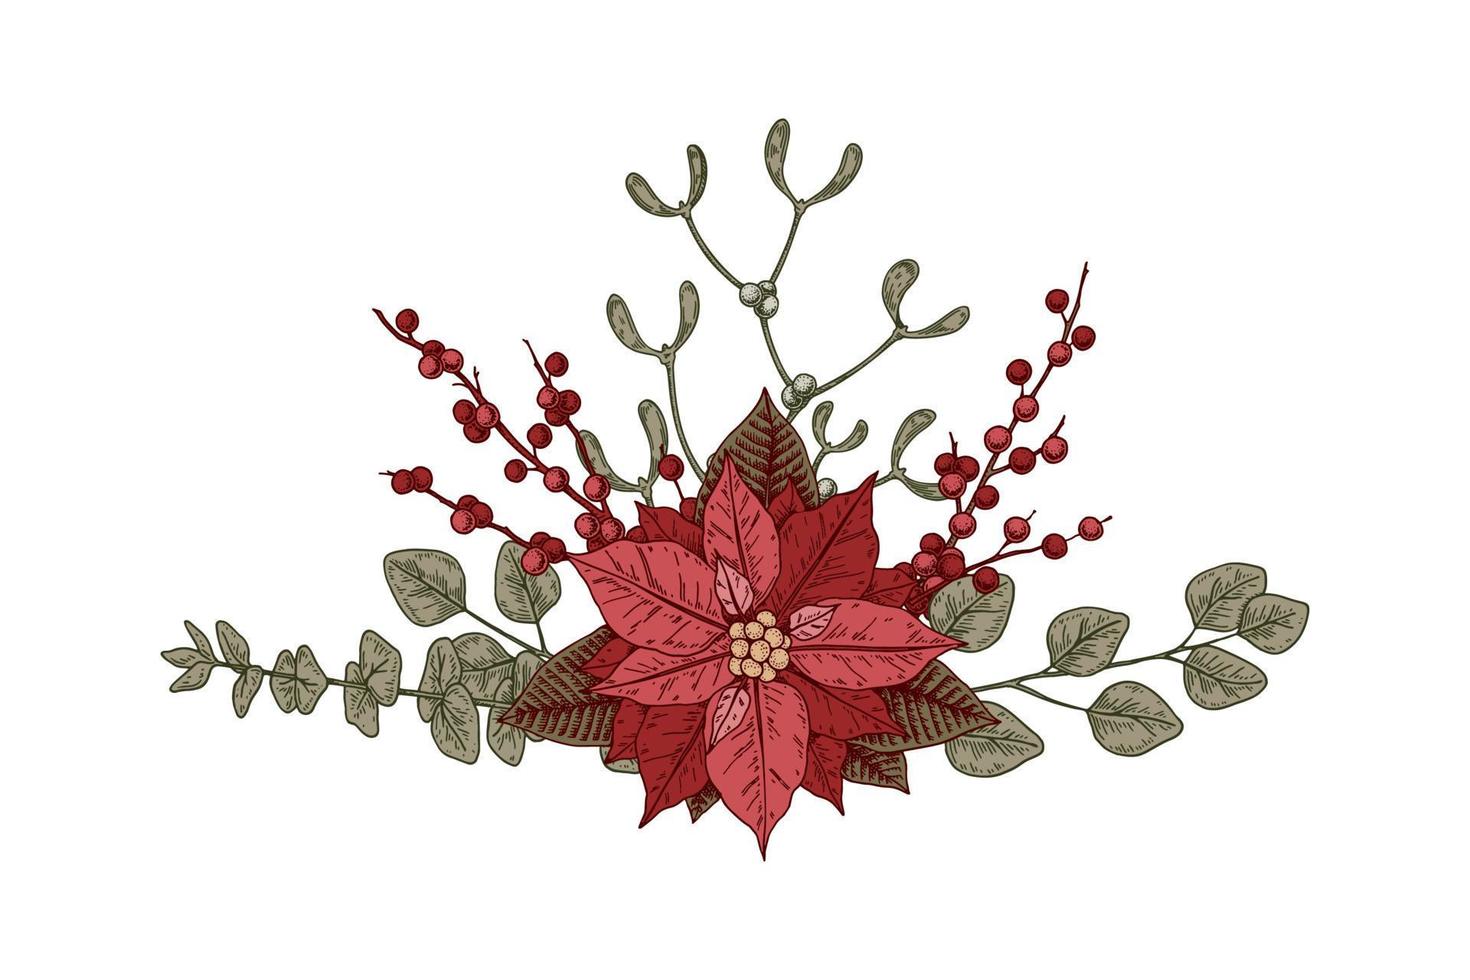 jul botanik sammansättning med julstjärna blomma och mistel. vektor illustration i skiss stil isolerat på vit bakgrund